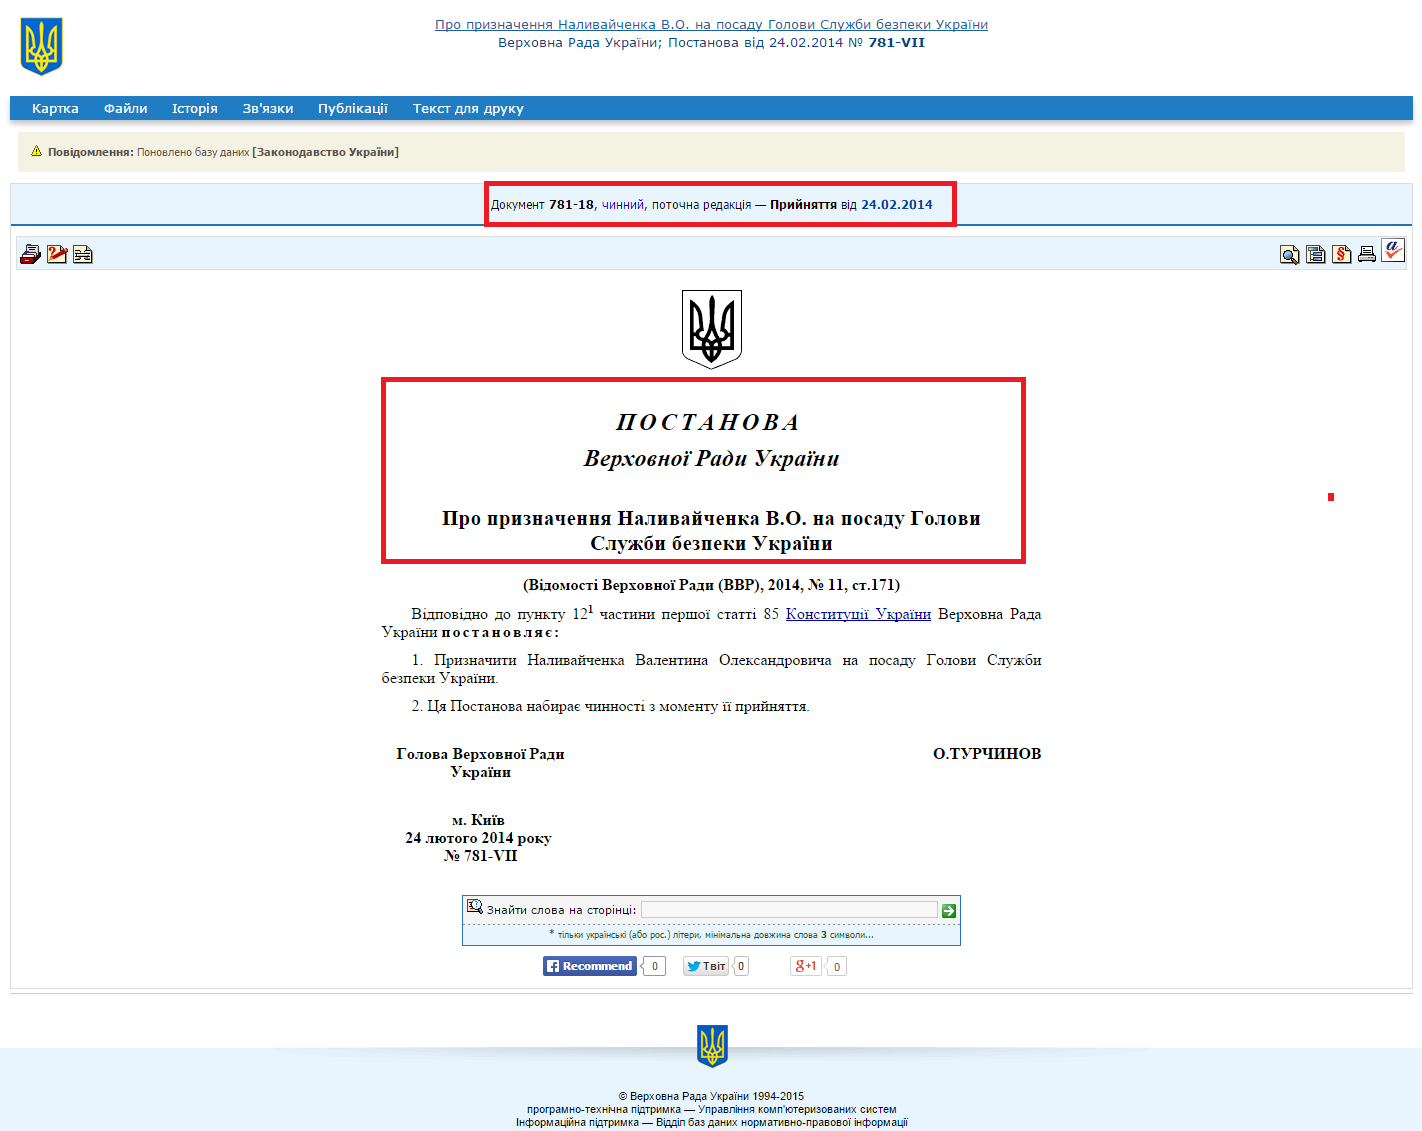 http://zakon2.rada.gov.ua/laws/show/781-18